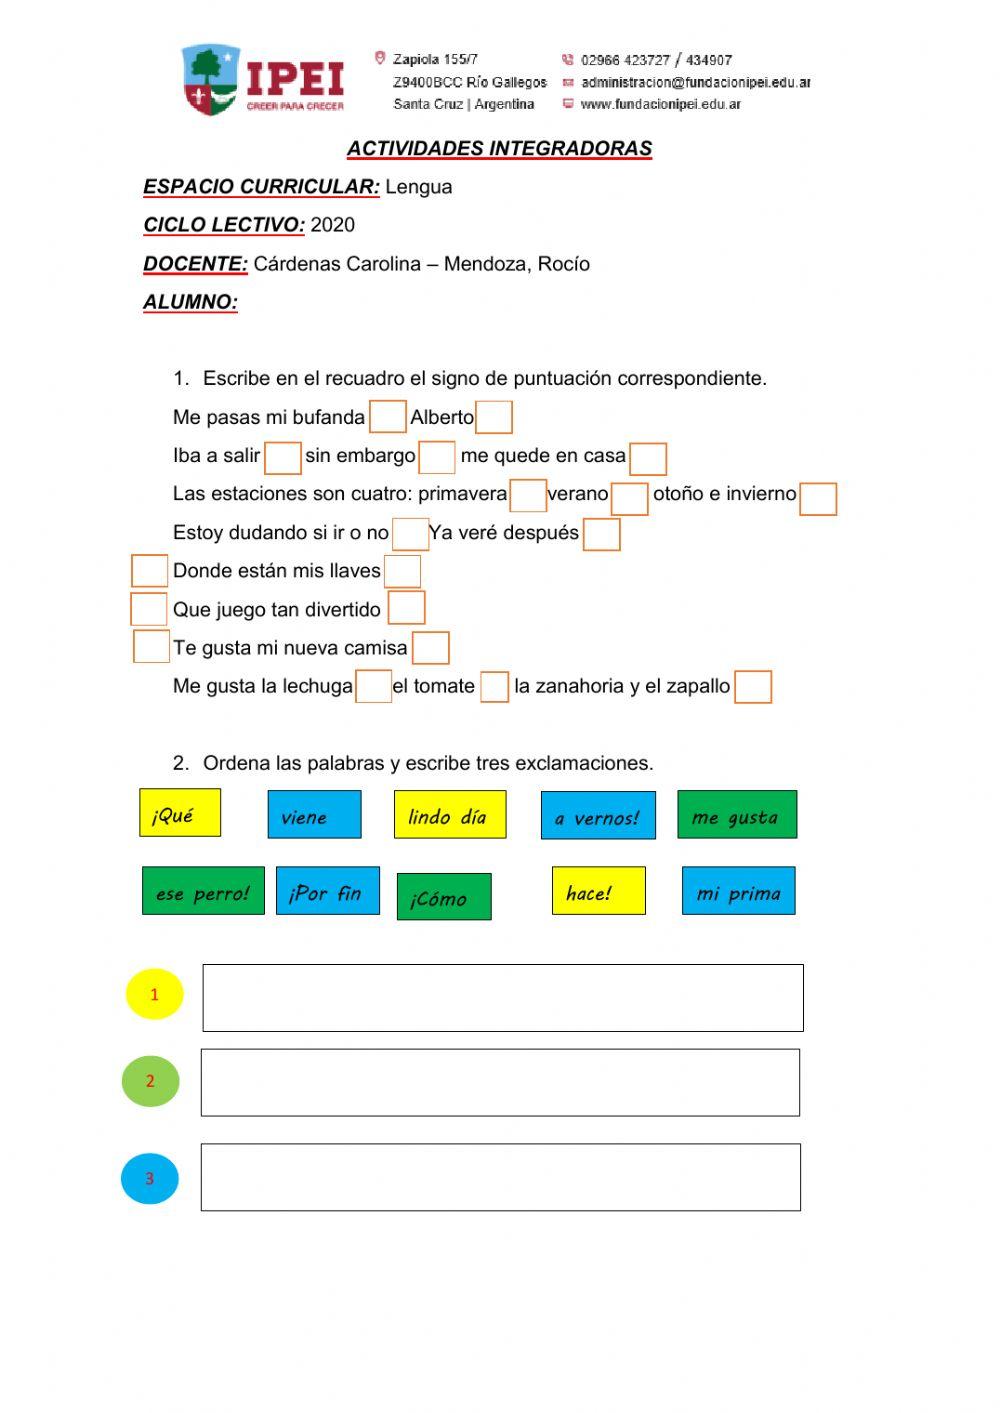 Lengua (S-19) worksheet | Live Worksheets